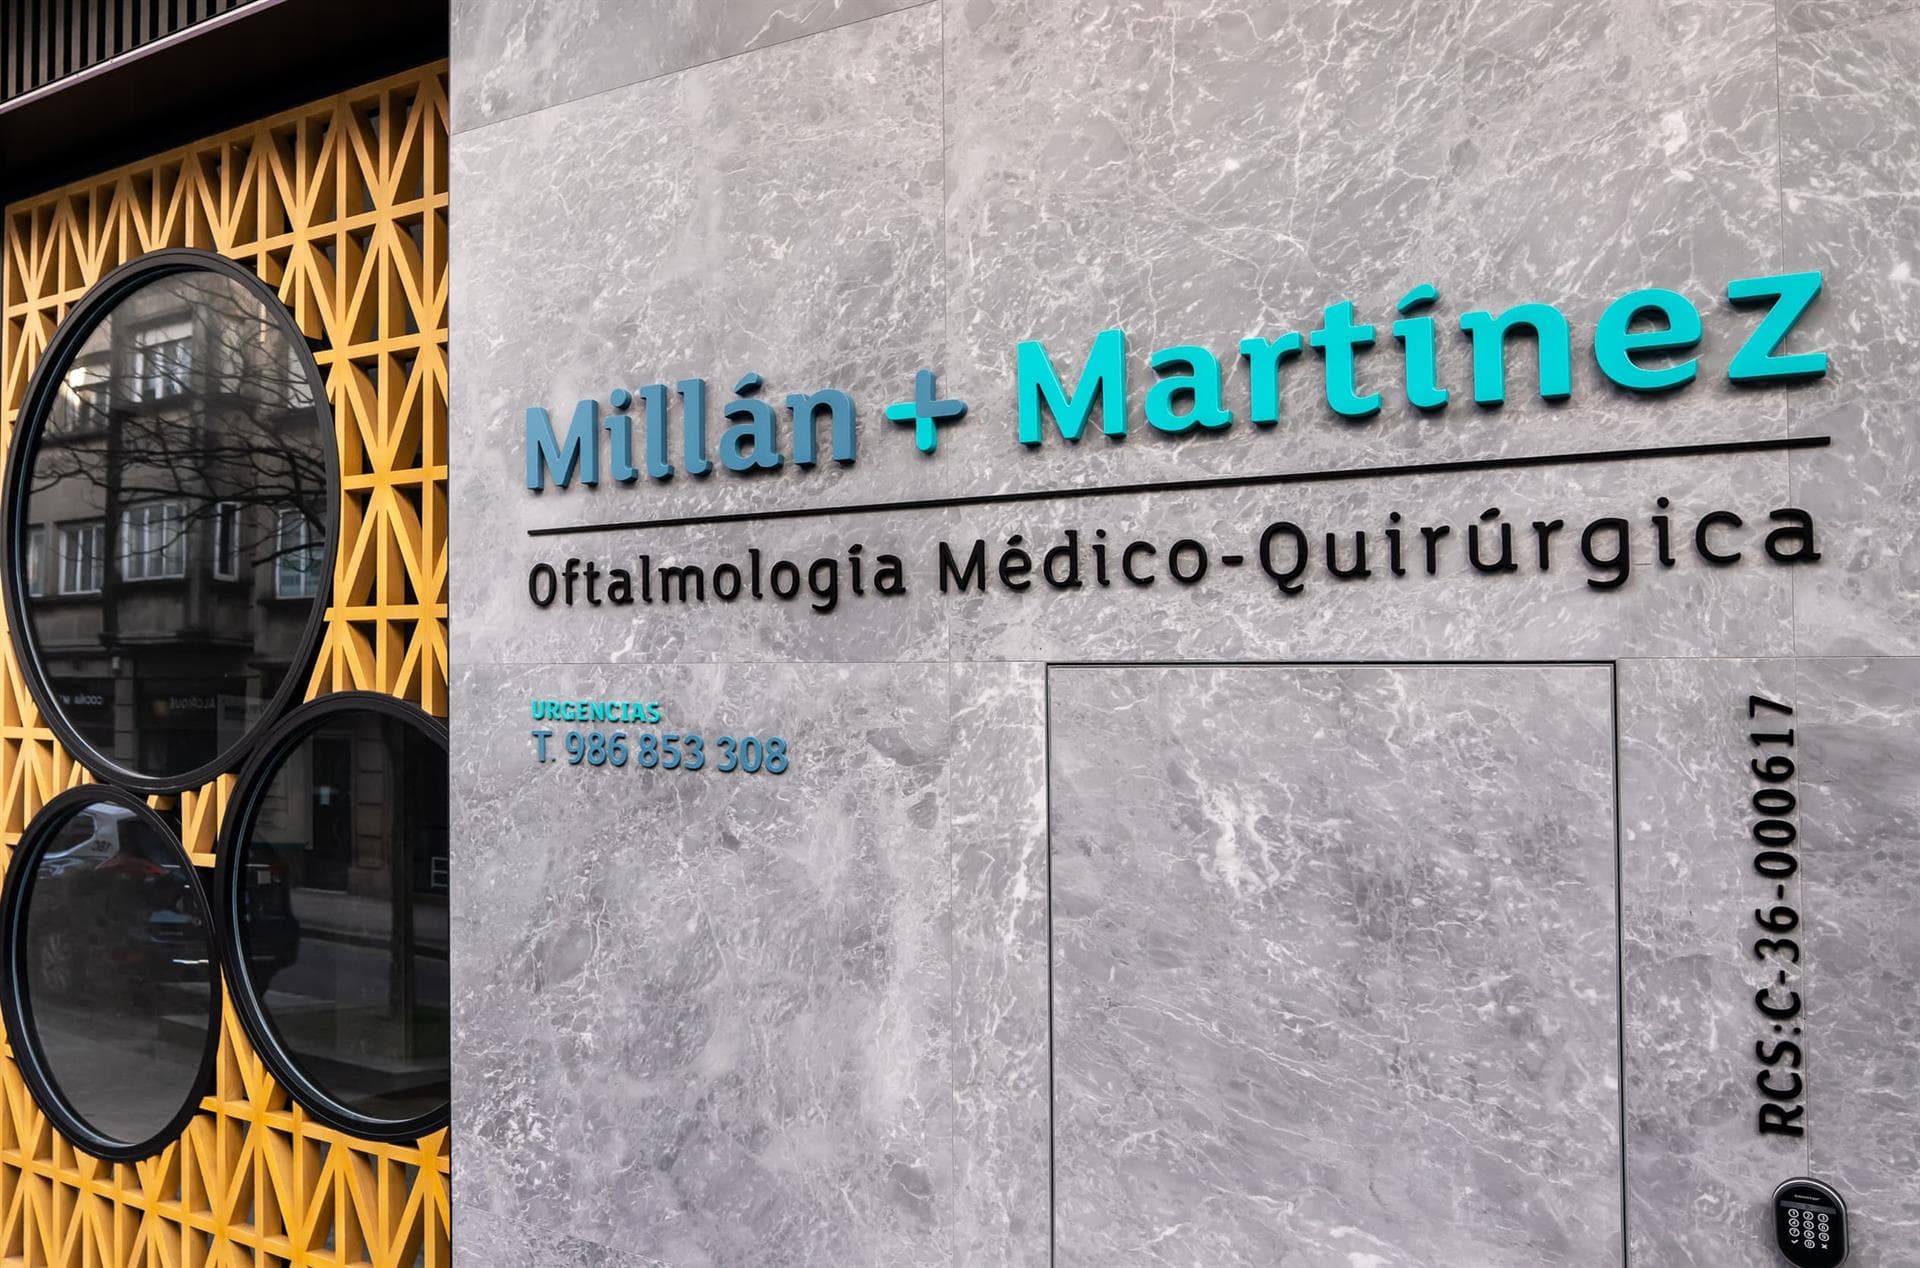 Equipo Millán + Martínez Oftalmología